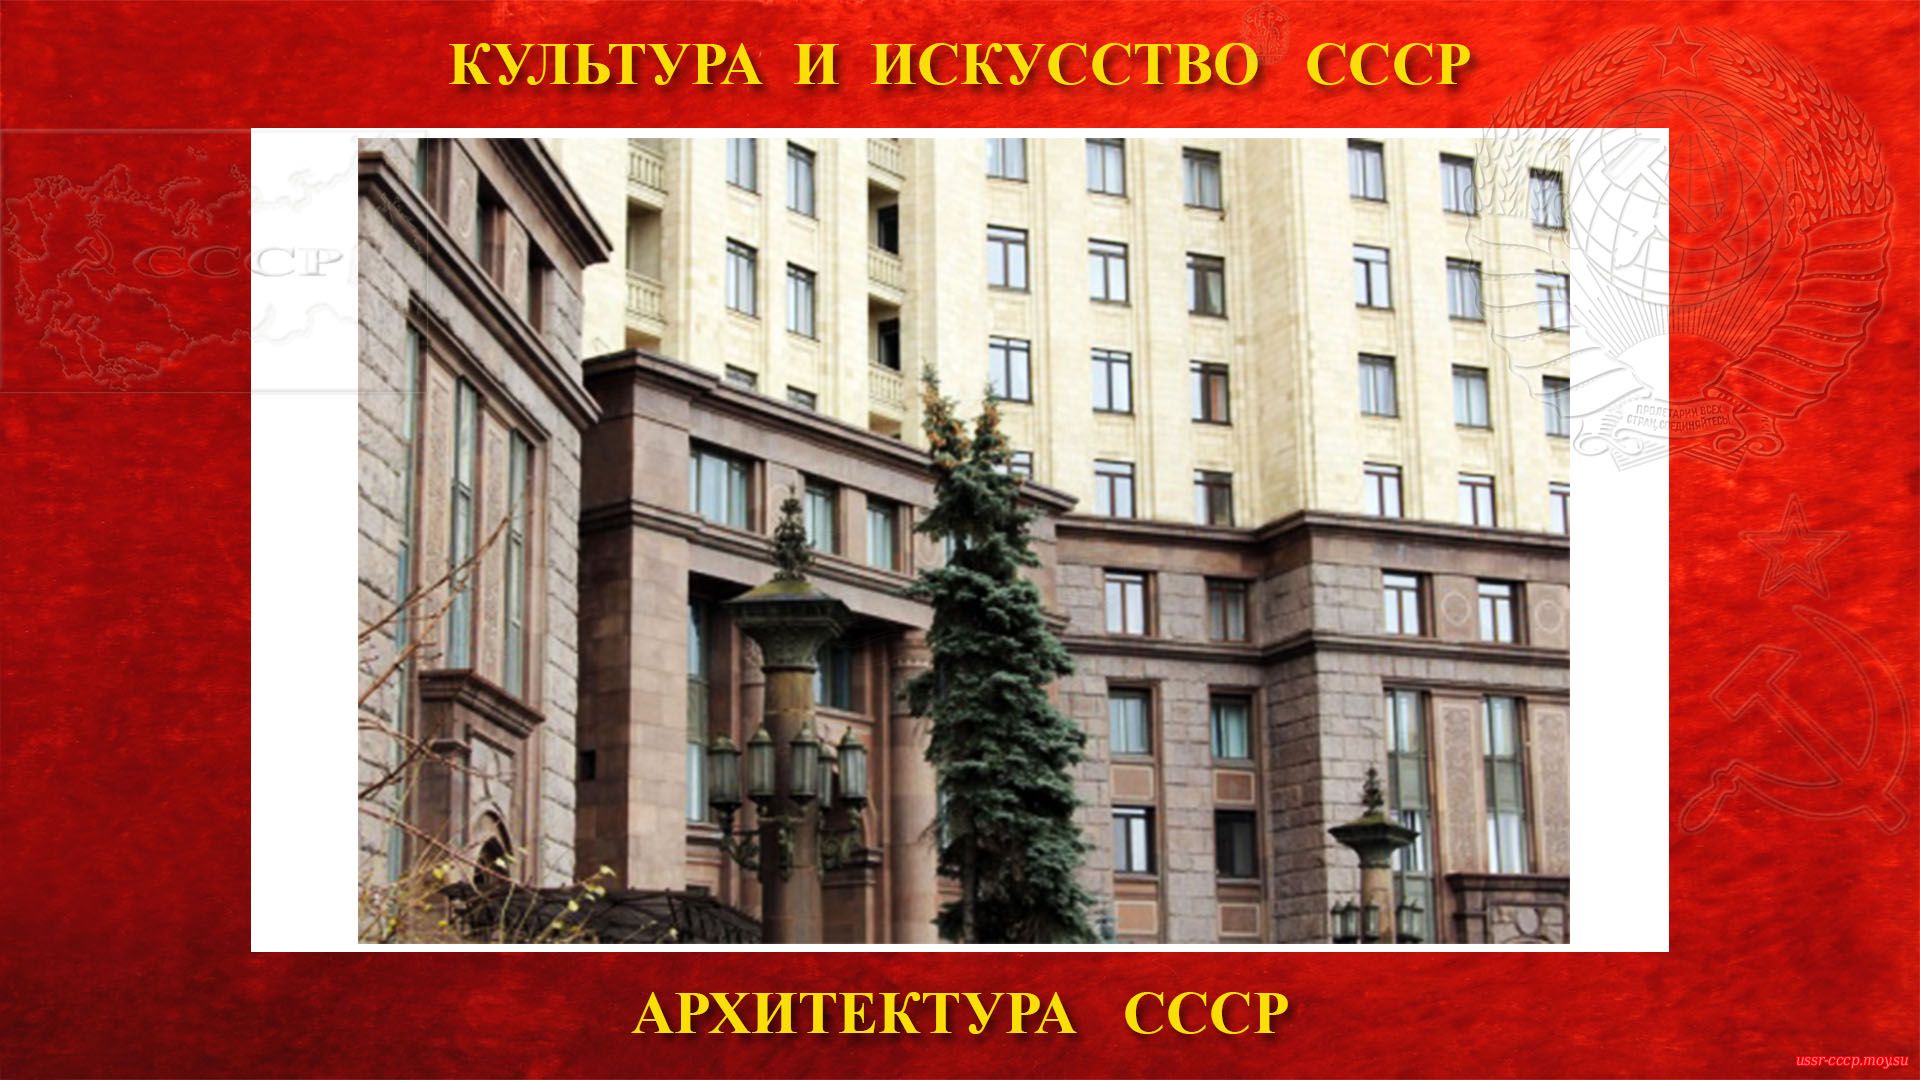 Жилого дом на Котельнической набережной — Пять нижних этажей сталинской высотки облицованы гранитом и образуют монументальный цоколь